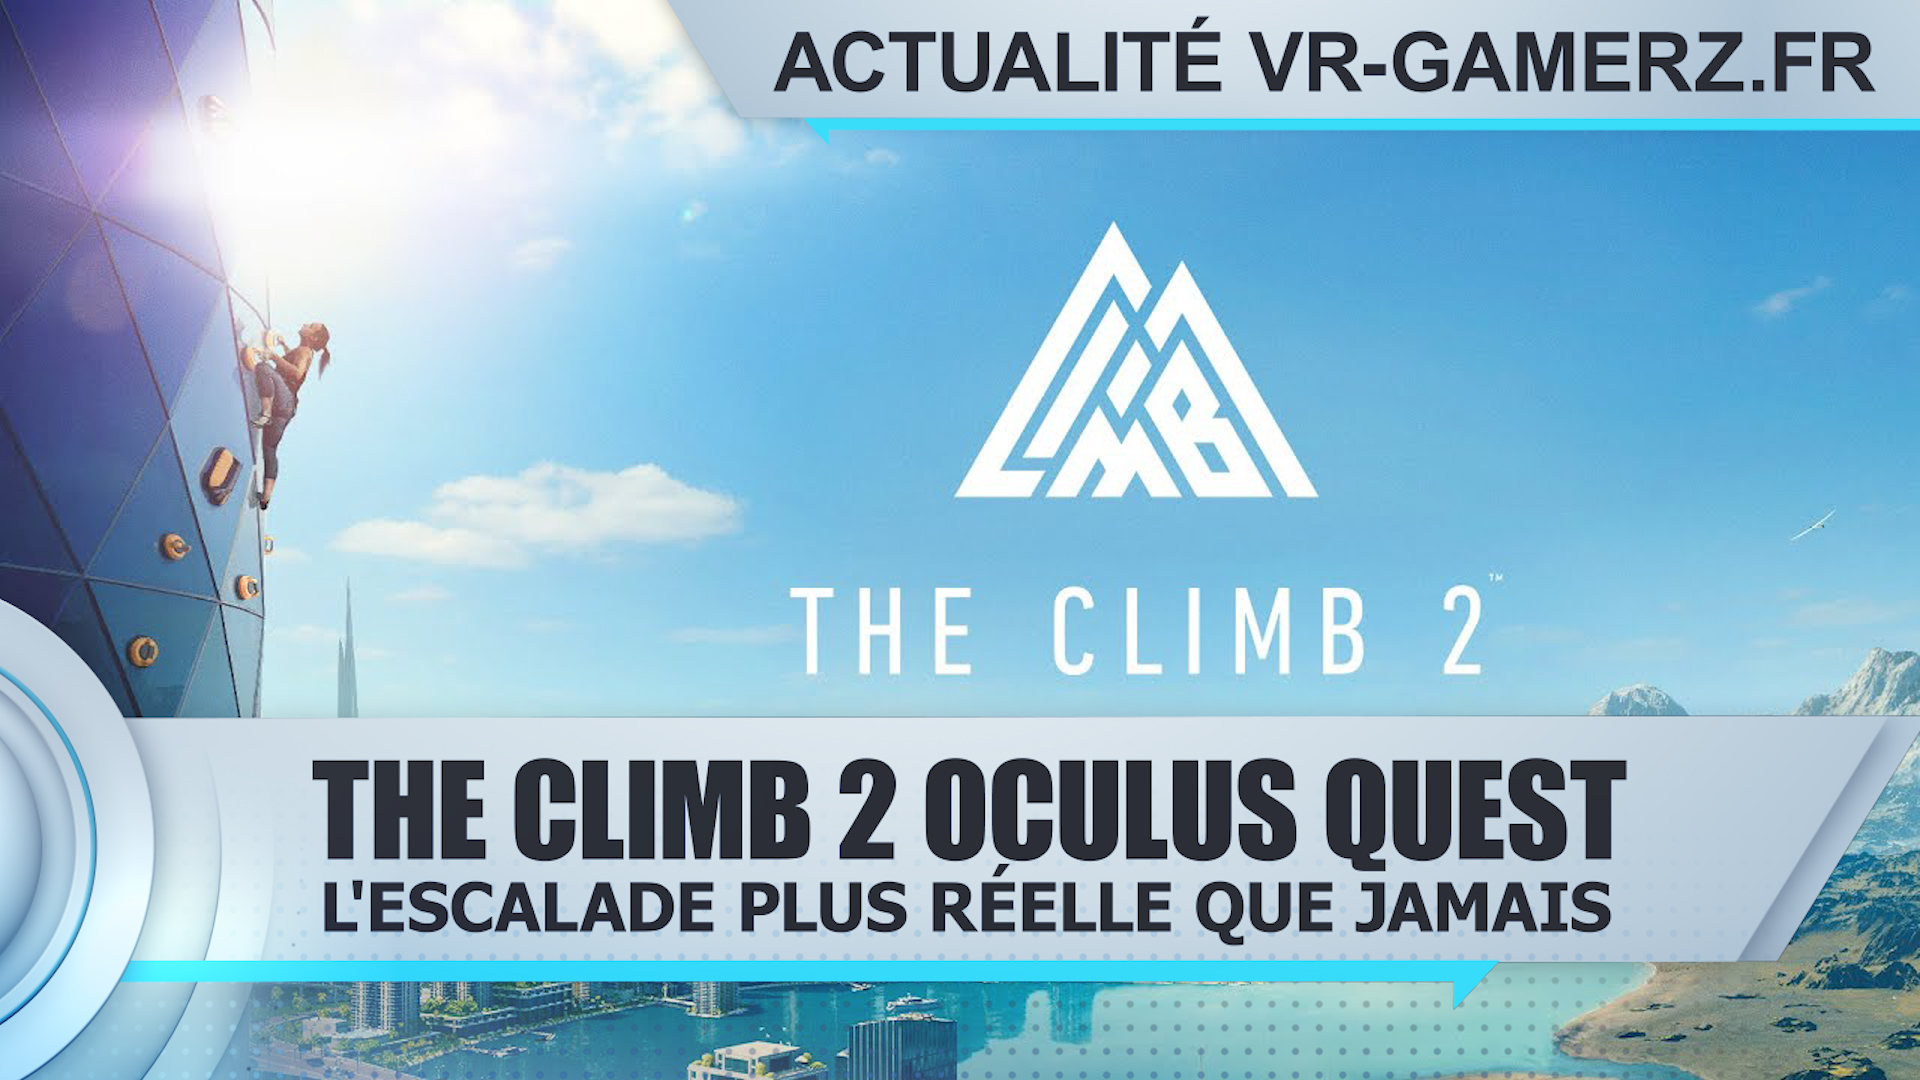 The Climb 2 Oculus quest : L’escalade plus réelle que jamais !